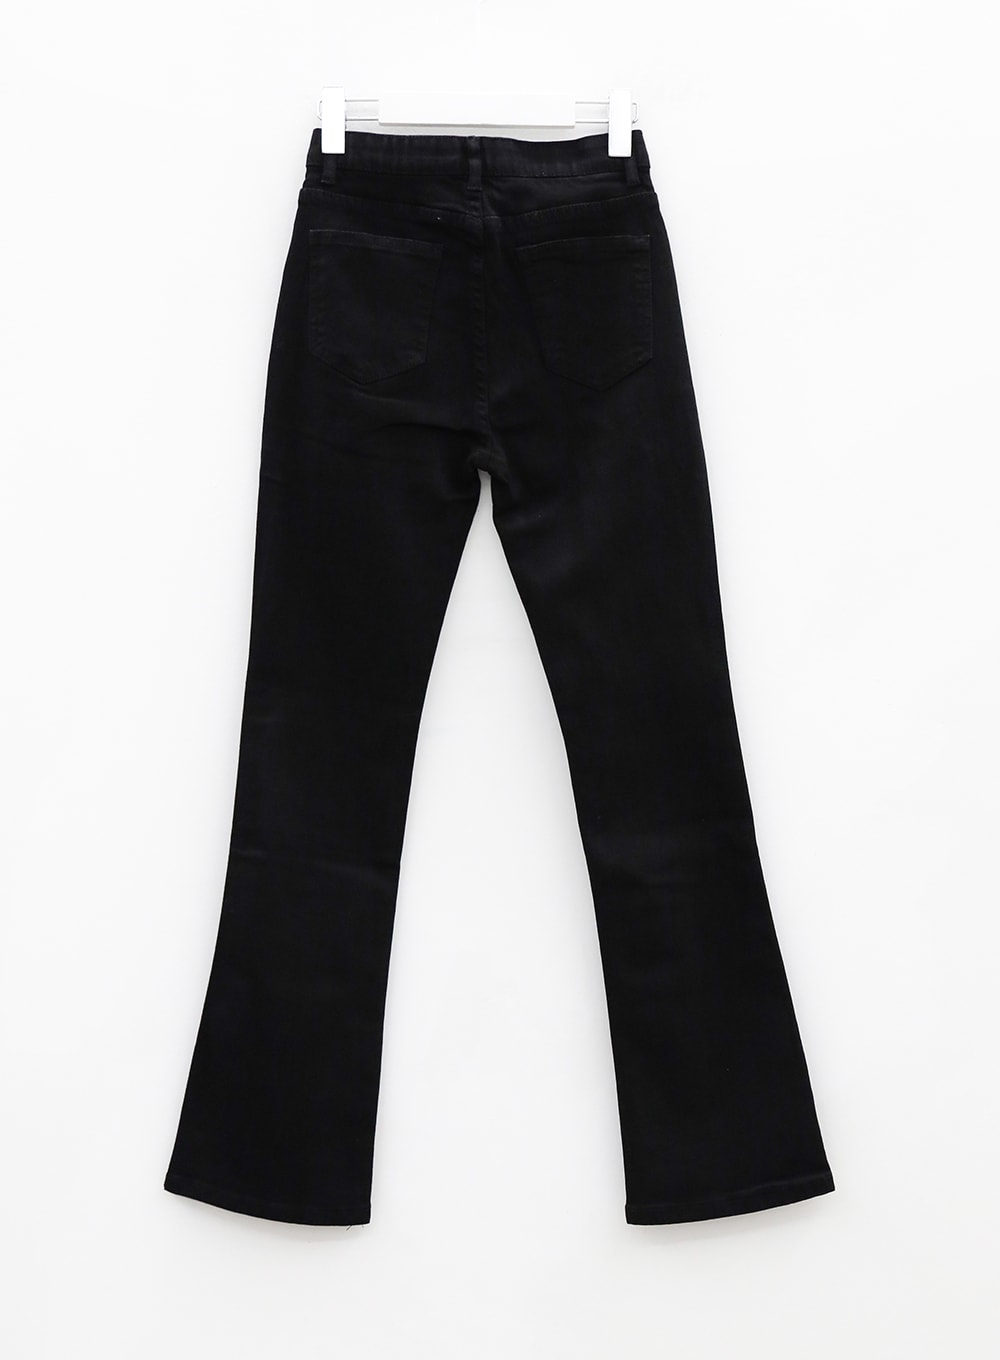 Black Spandex Boot-Cut Pants OU7